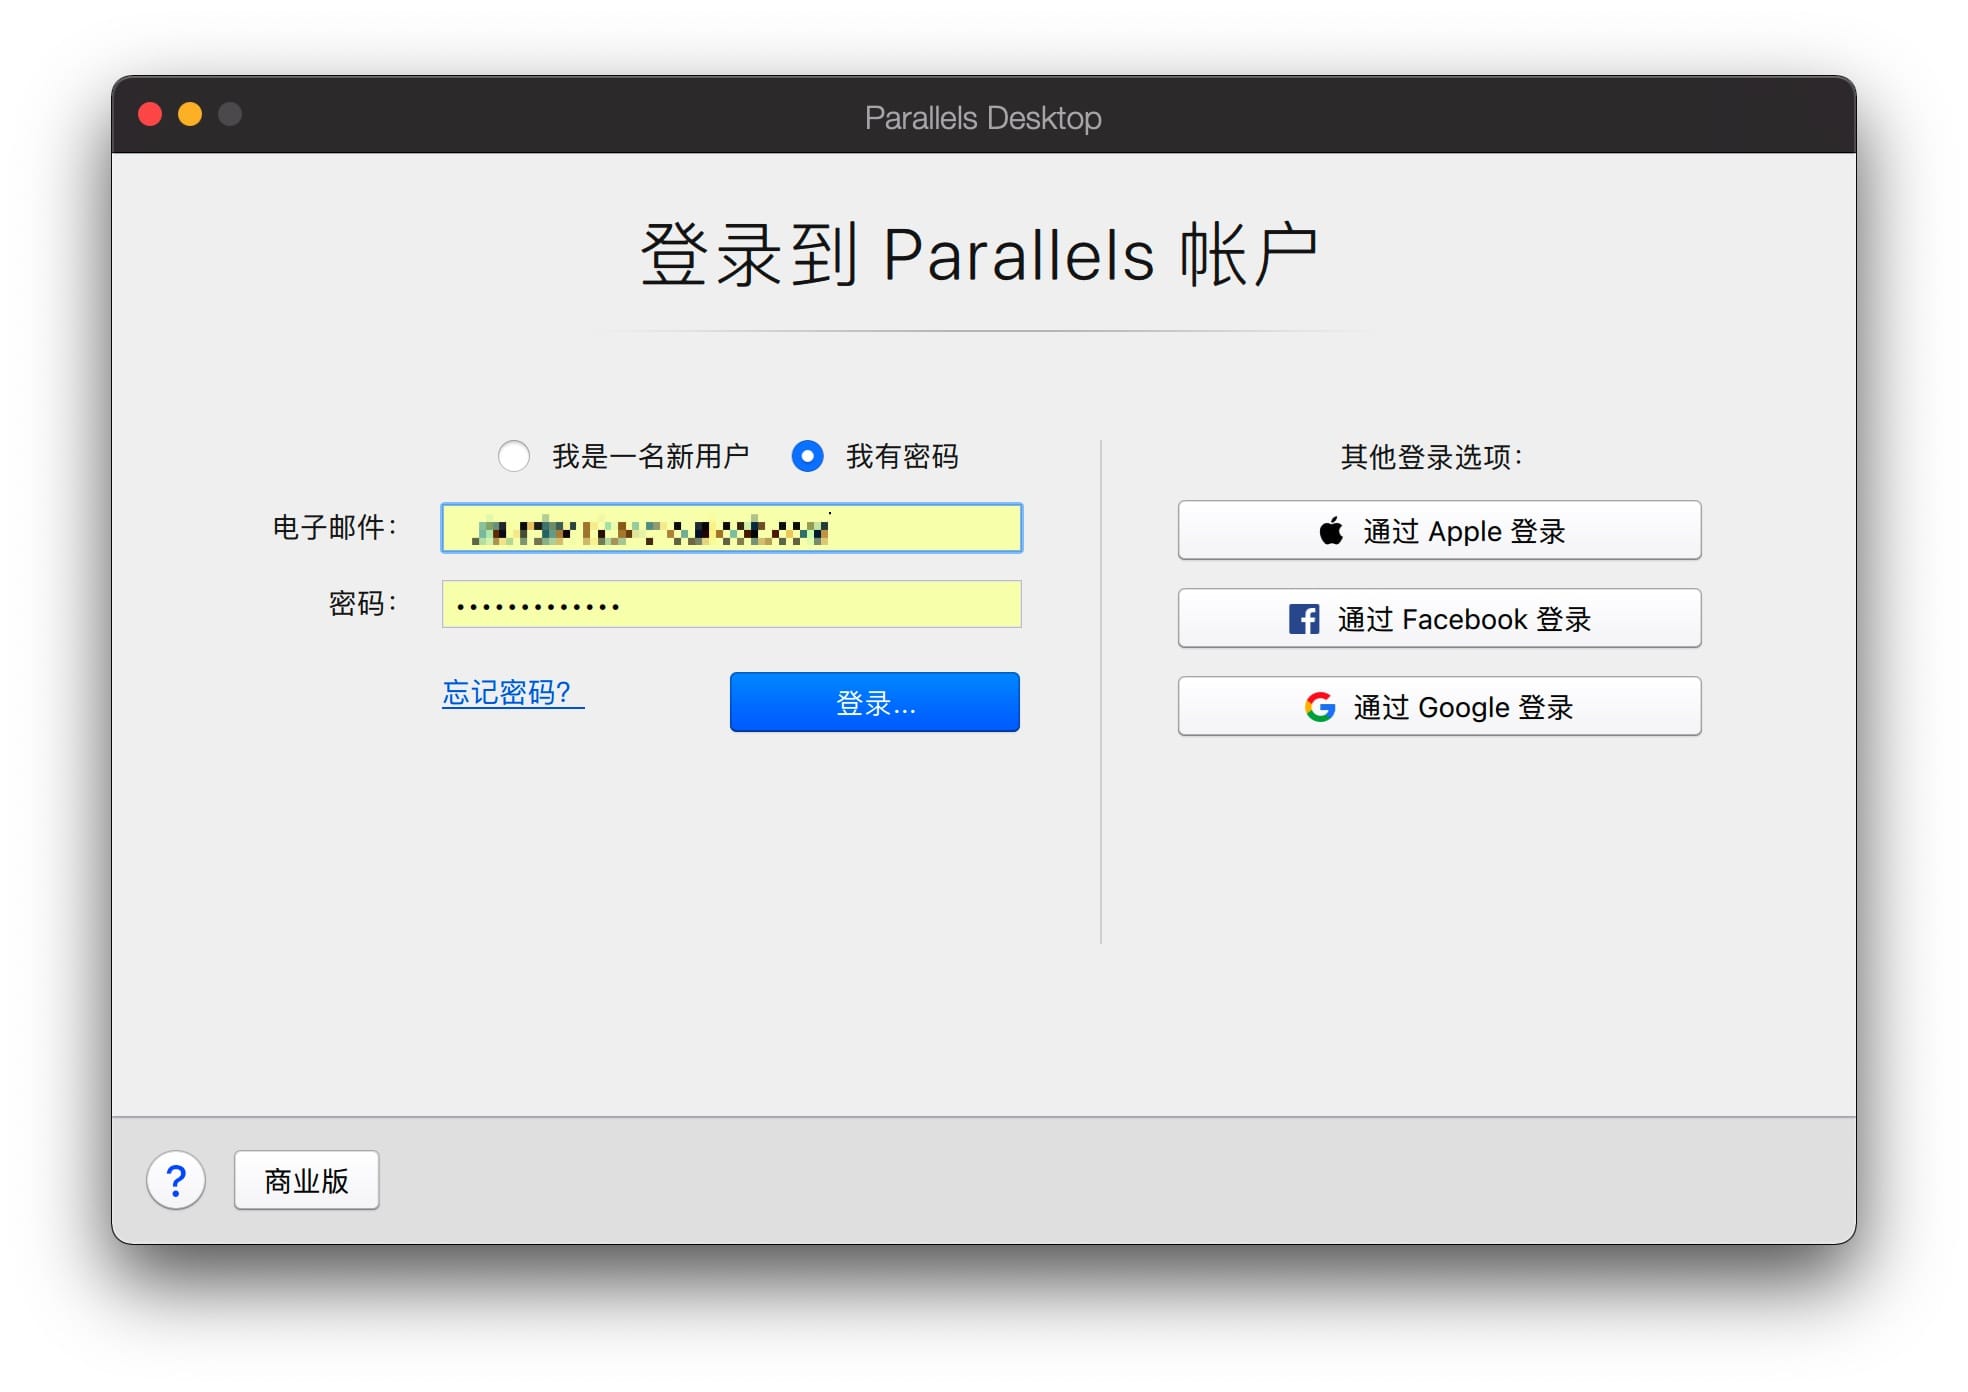 ParallelsDesktop 16.3.1(50393)  技术预览版(仅支持M1)   虚拟机软件 Mac教程 第1张